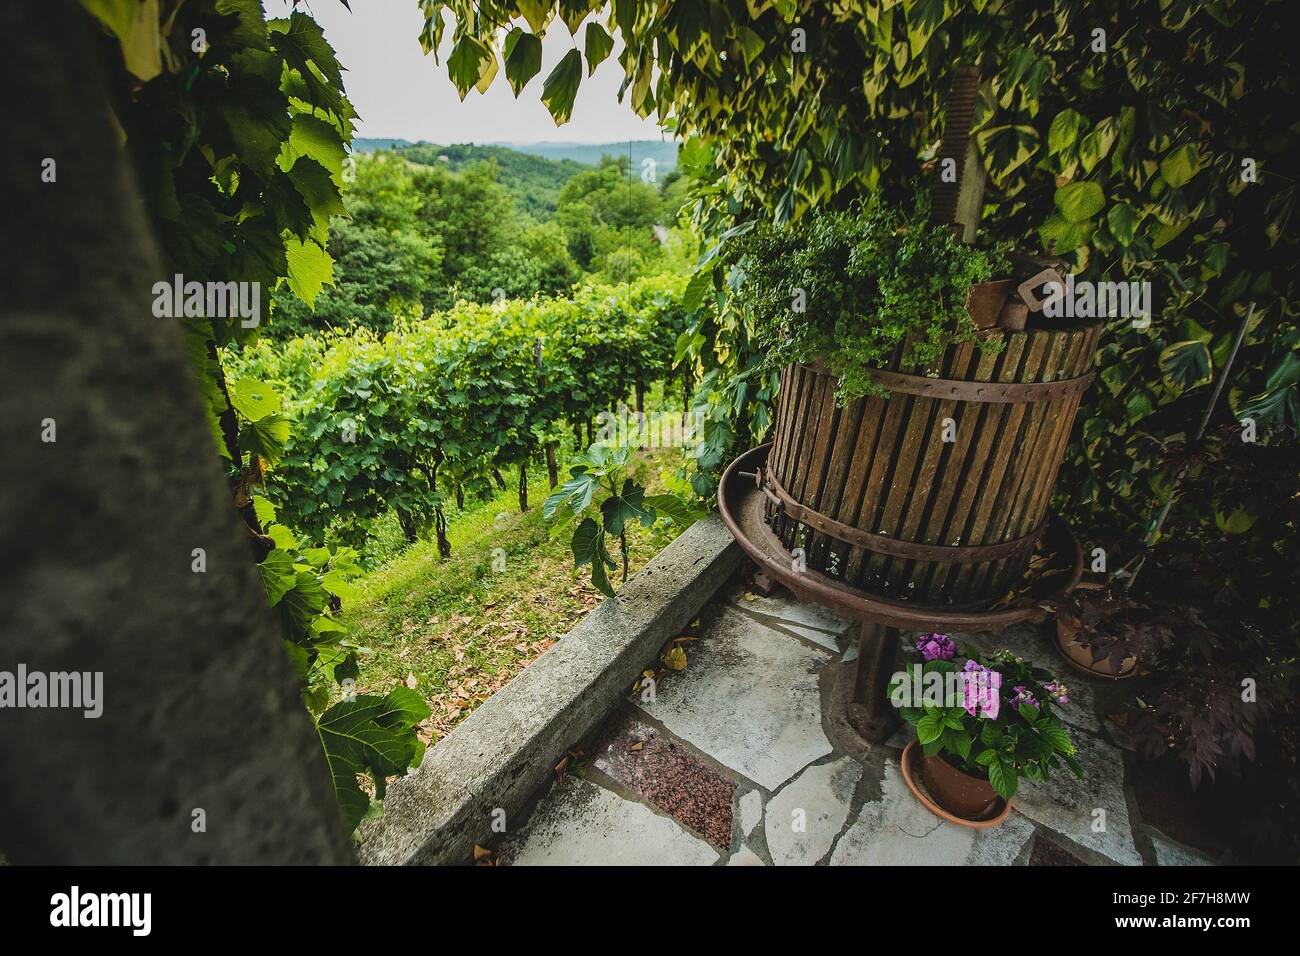 Une vieille presse à raisin pour faire du vin est située sur un porche à côté d'un vignoble vert luxuriant en arrière-plan. Banque D'Images